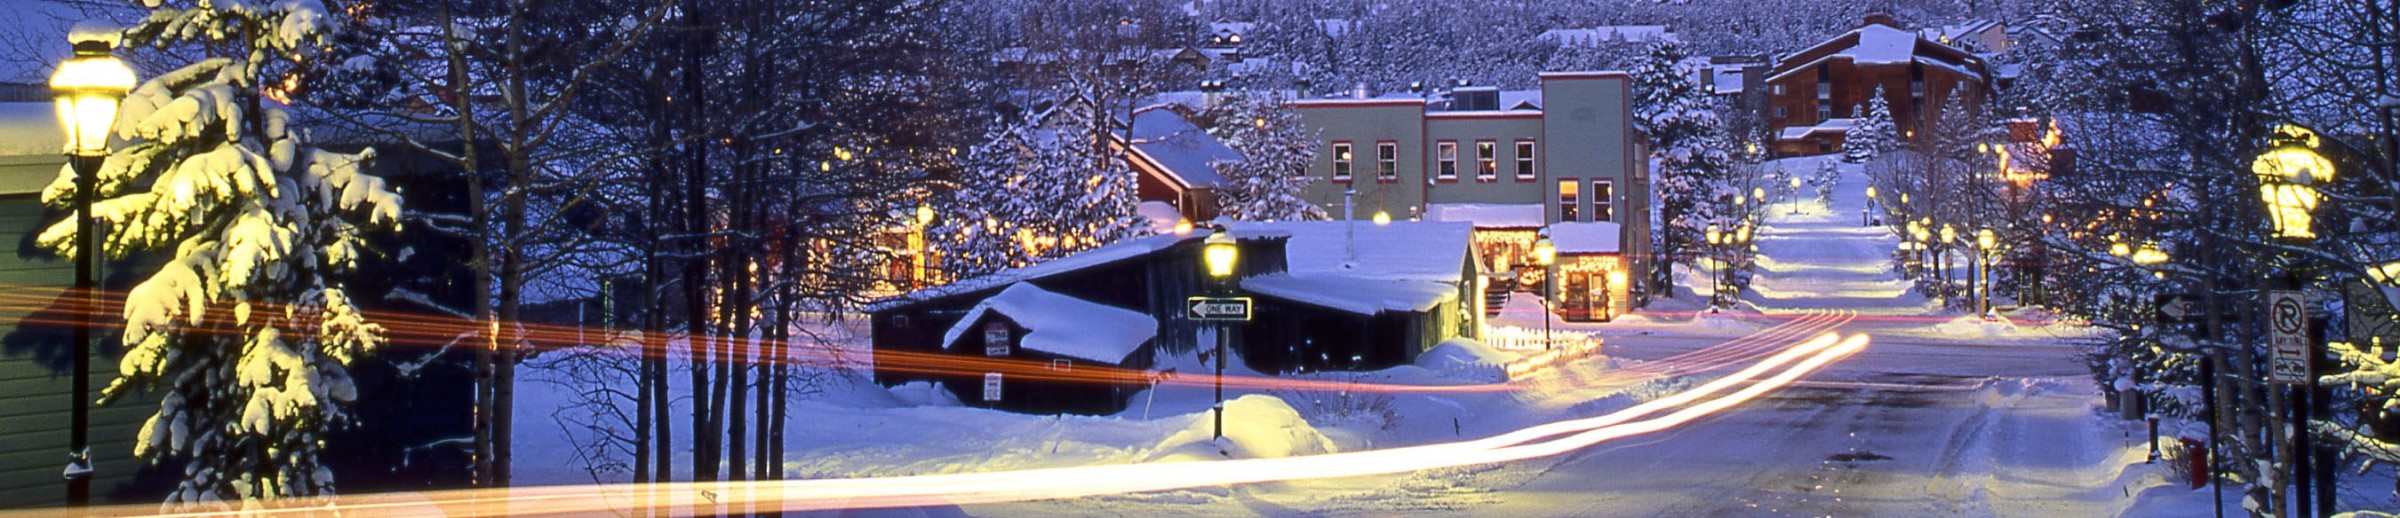 Breckenridge Ski Resort - Alpine Ski Resort Western United States